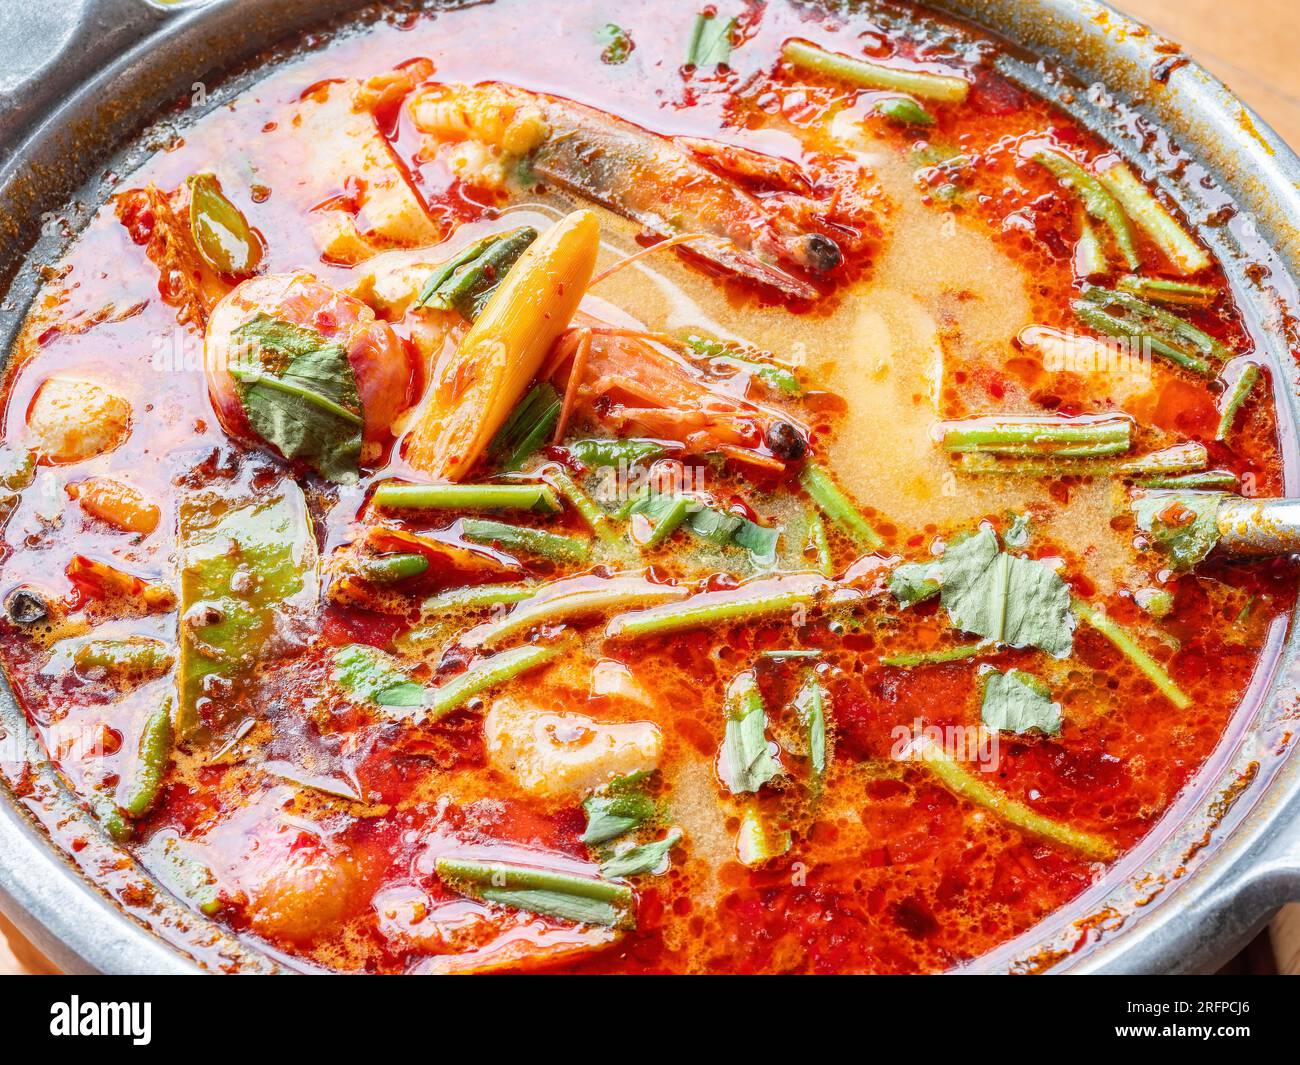 La célèbre soupe thaïlandaise, tom Yam kung, une soupe chaude et aigre avec des crevettes et des herbes, populaire parmi les touristes en Thaïlande ainsi que les thaïlandais. Banque D'Images